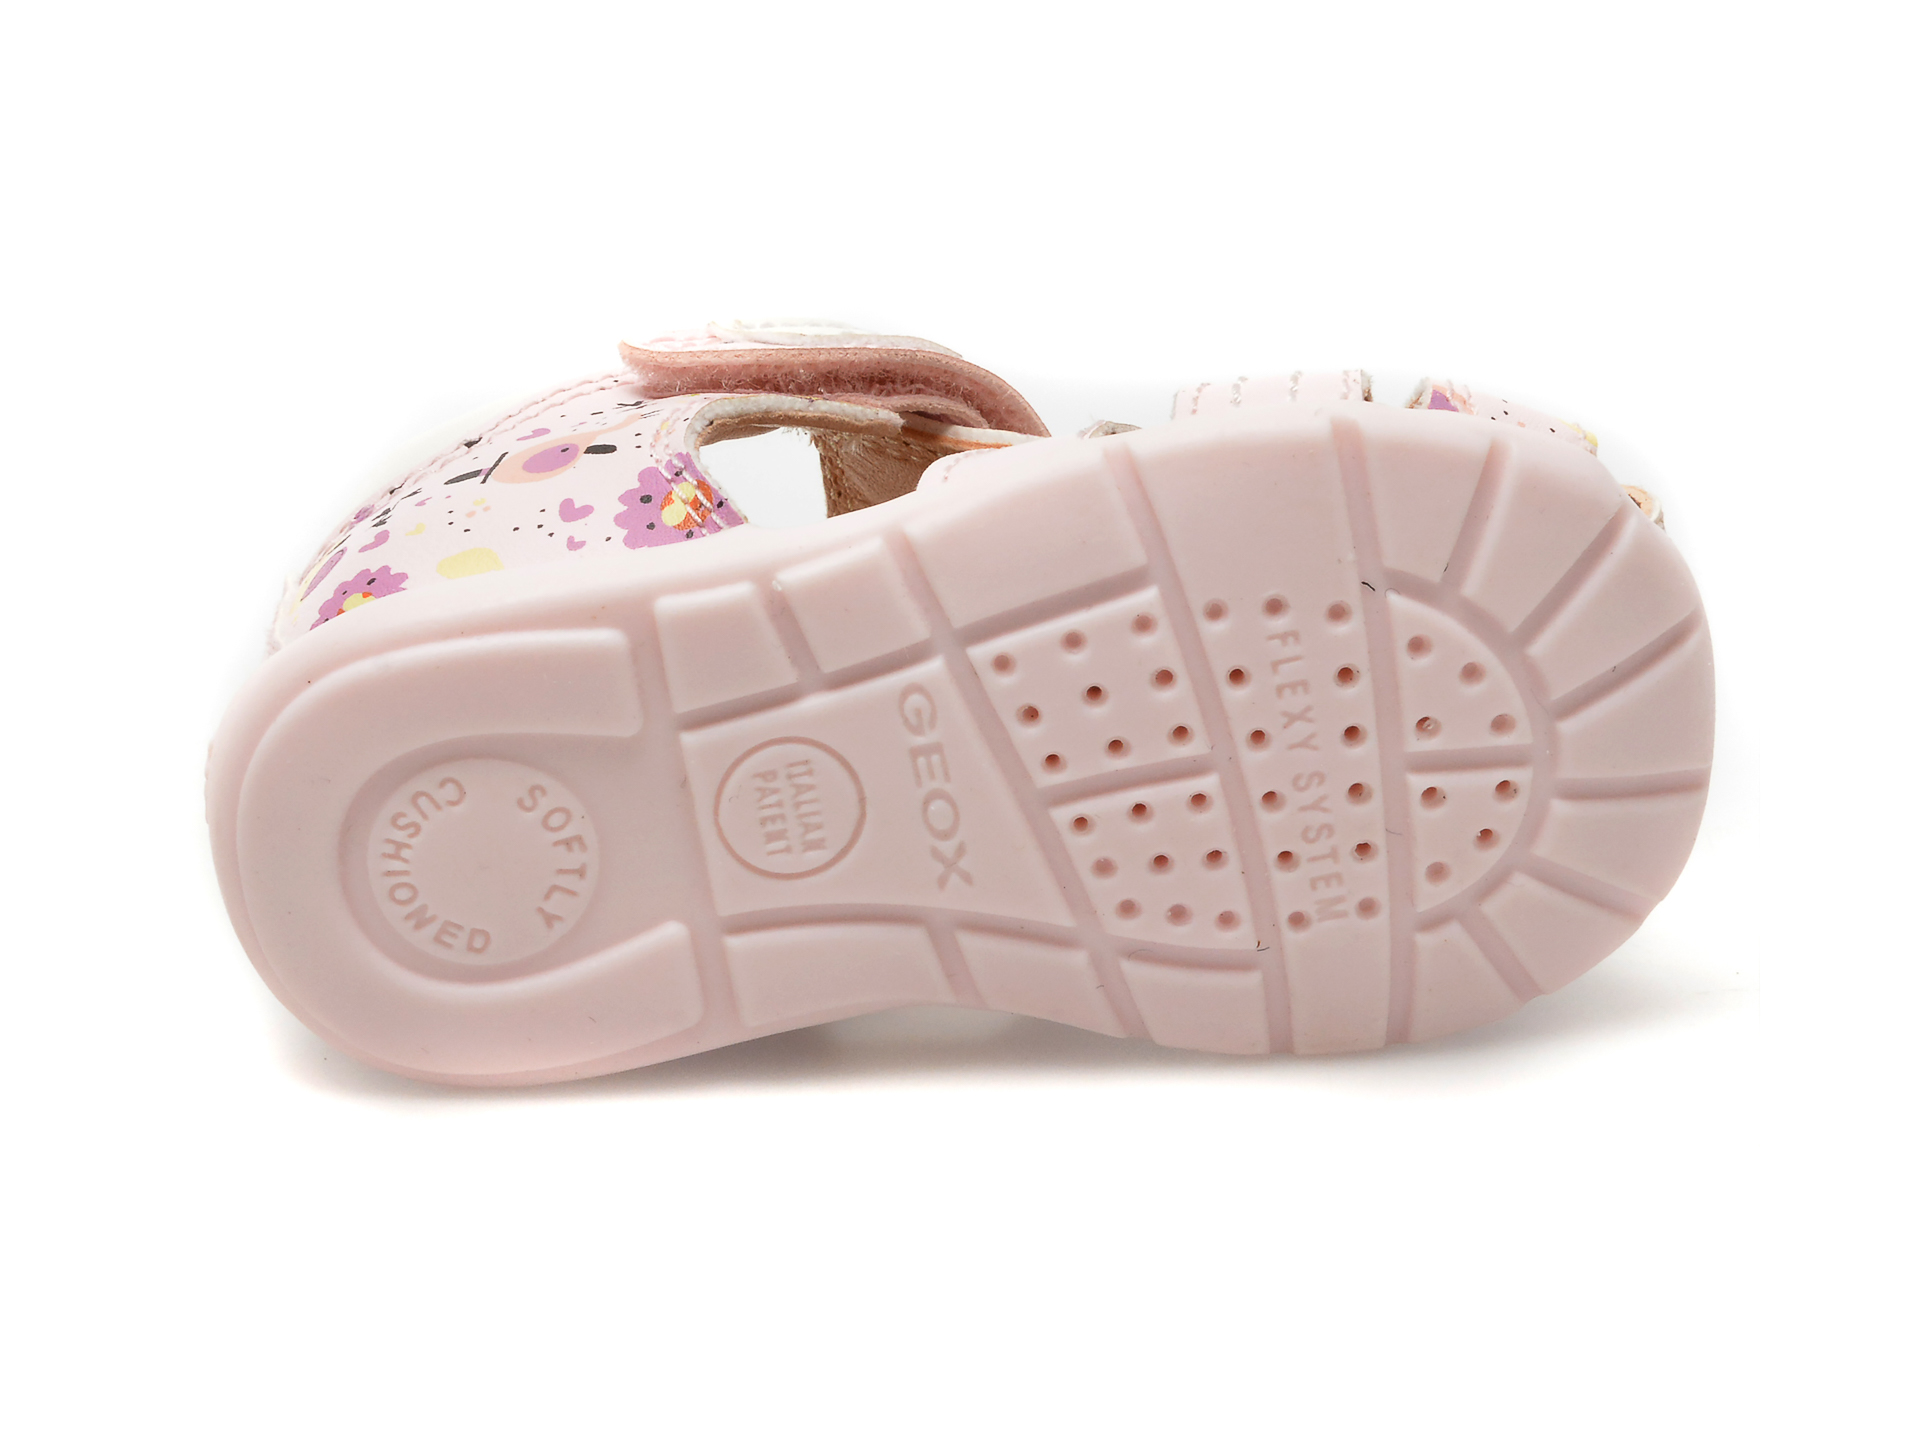 Sandale GEOX roz, B151QD, din piele ecologica